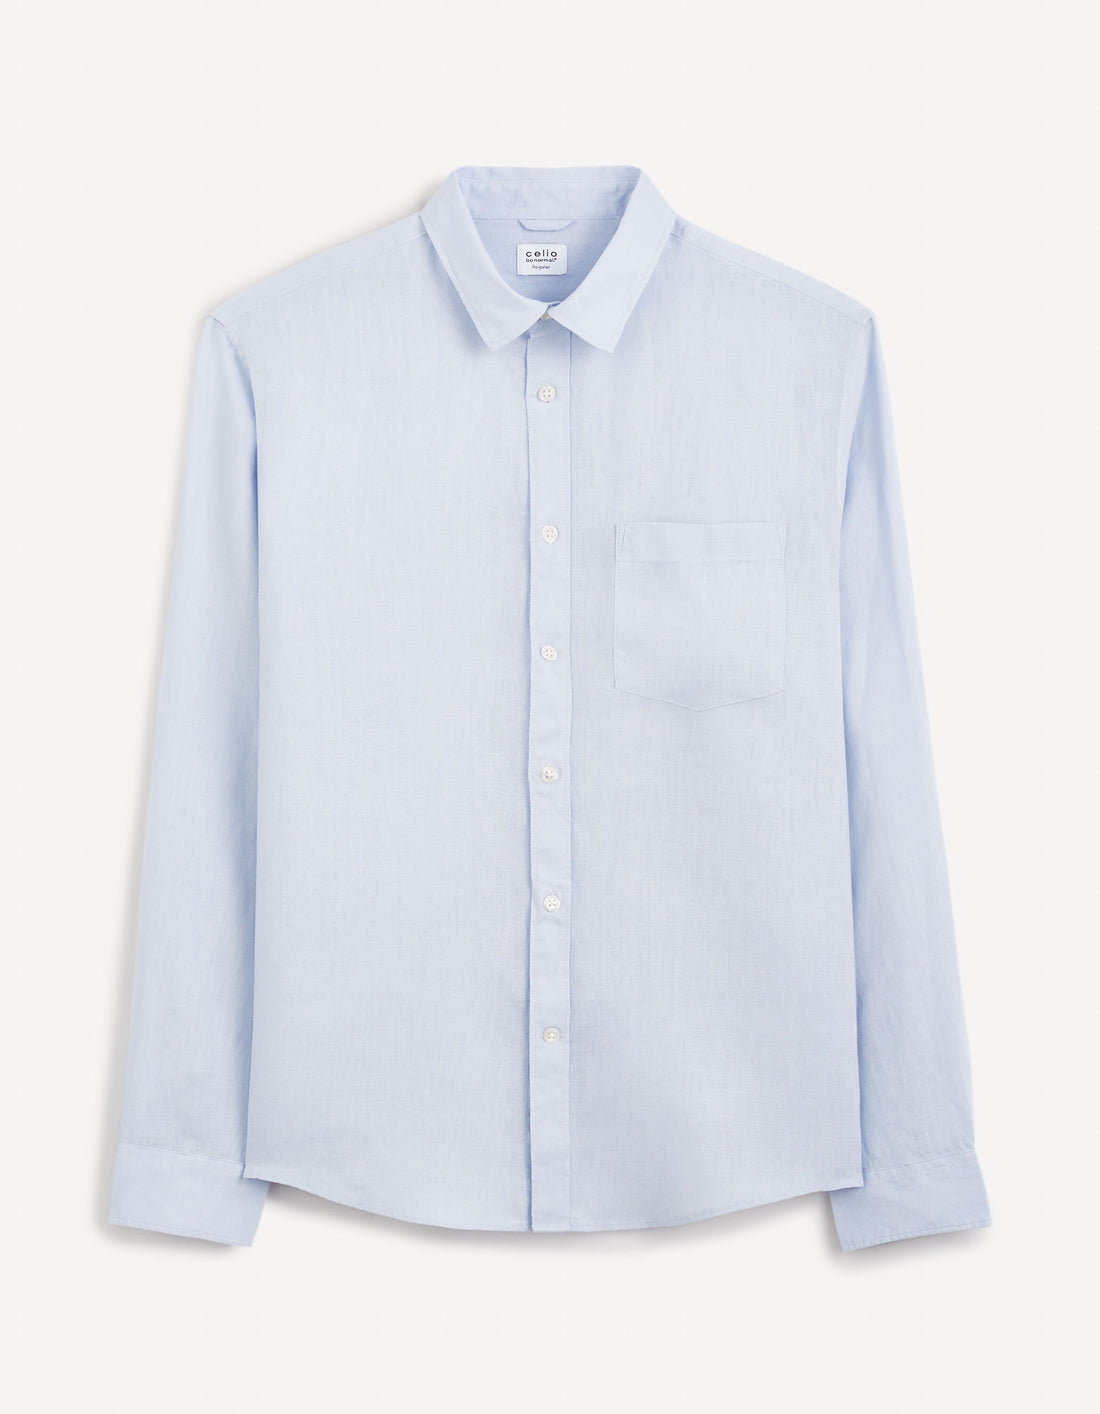 Regular Shirt 100% Linen_DAFLIX_LIGHT BLUE_02